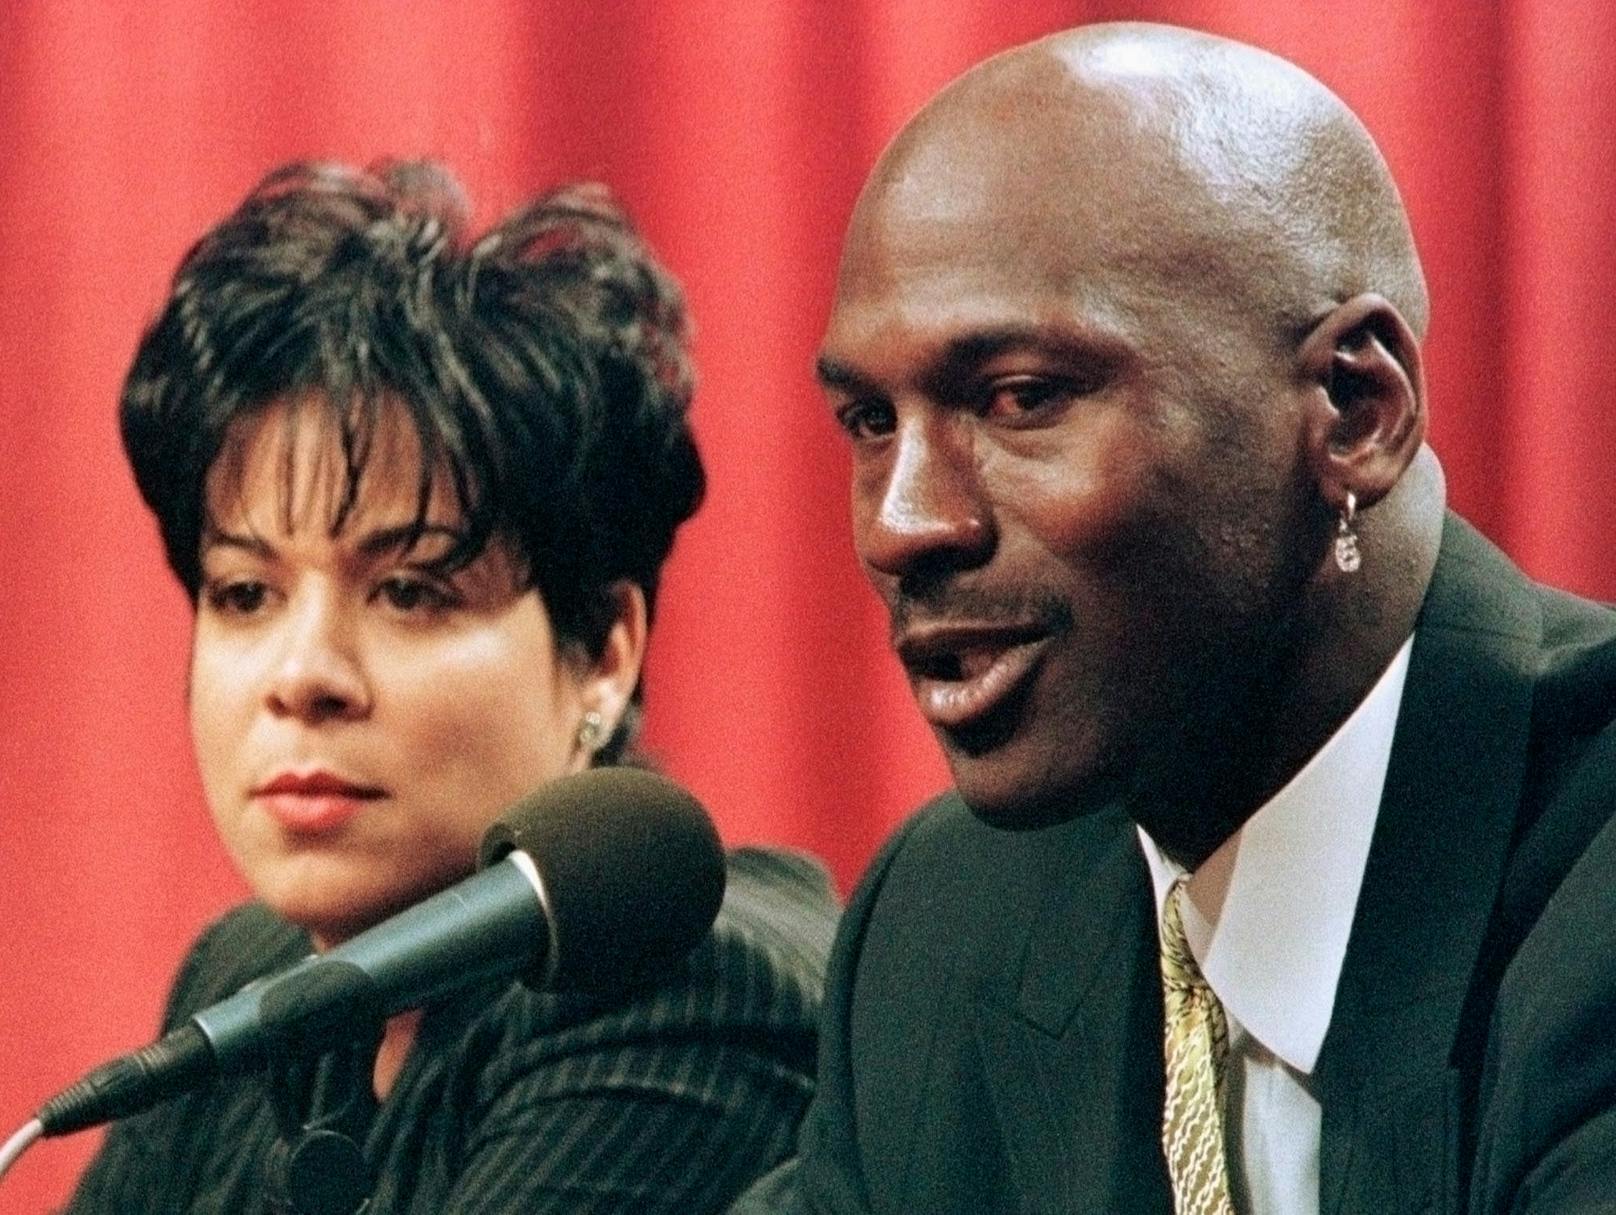 Basketball-Superstar <strong>Michael Jordan</strong>&nbsp;trennte sich gleich zwei Mal von seiner Frau Juanita Vanoy. 2002 reichten sie das erste Mal die Scheidung ein, versöhnten sich jedoch. 2006 dann der Bruch - und 168 Millionen für Juanita.&nbsp;